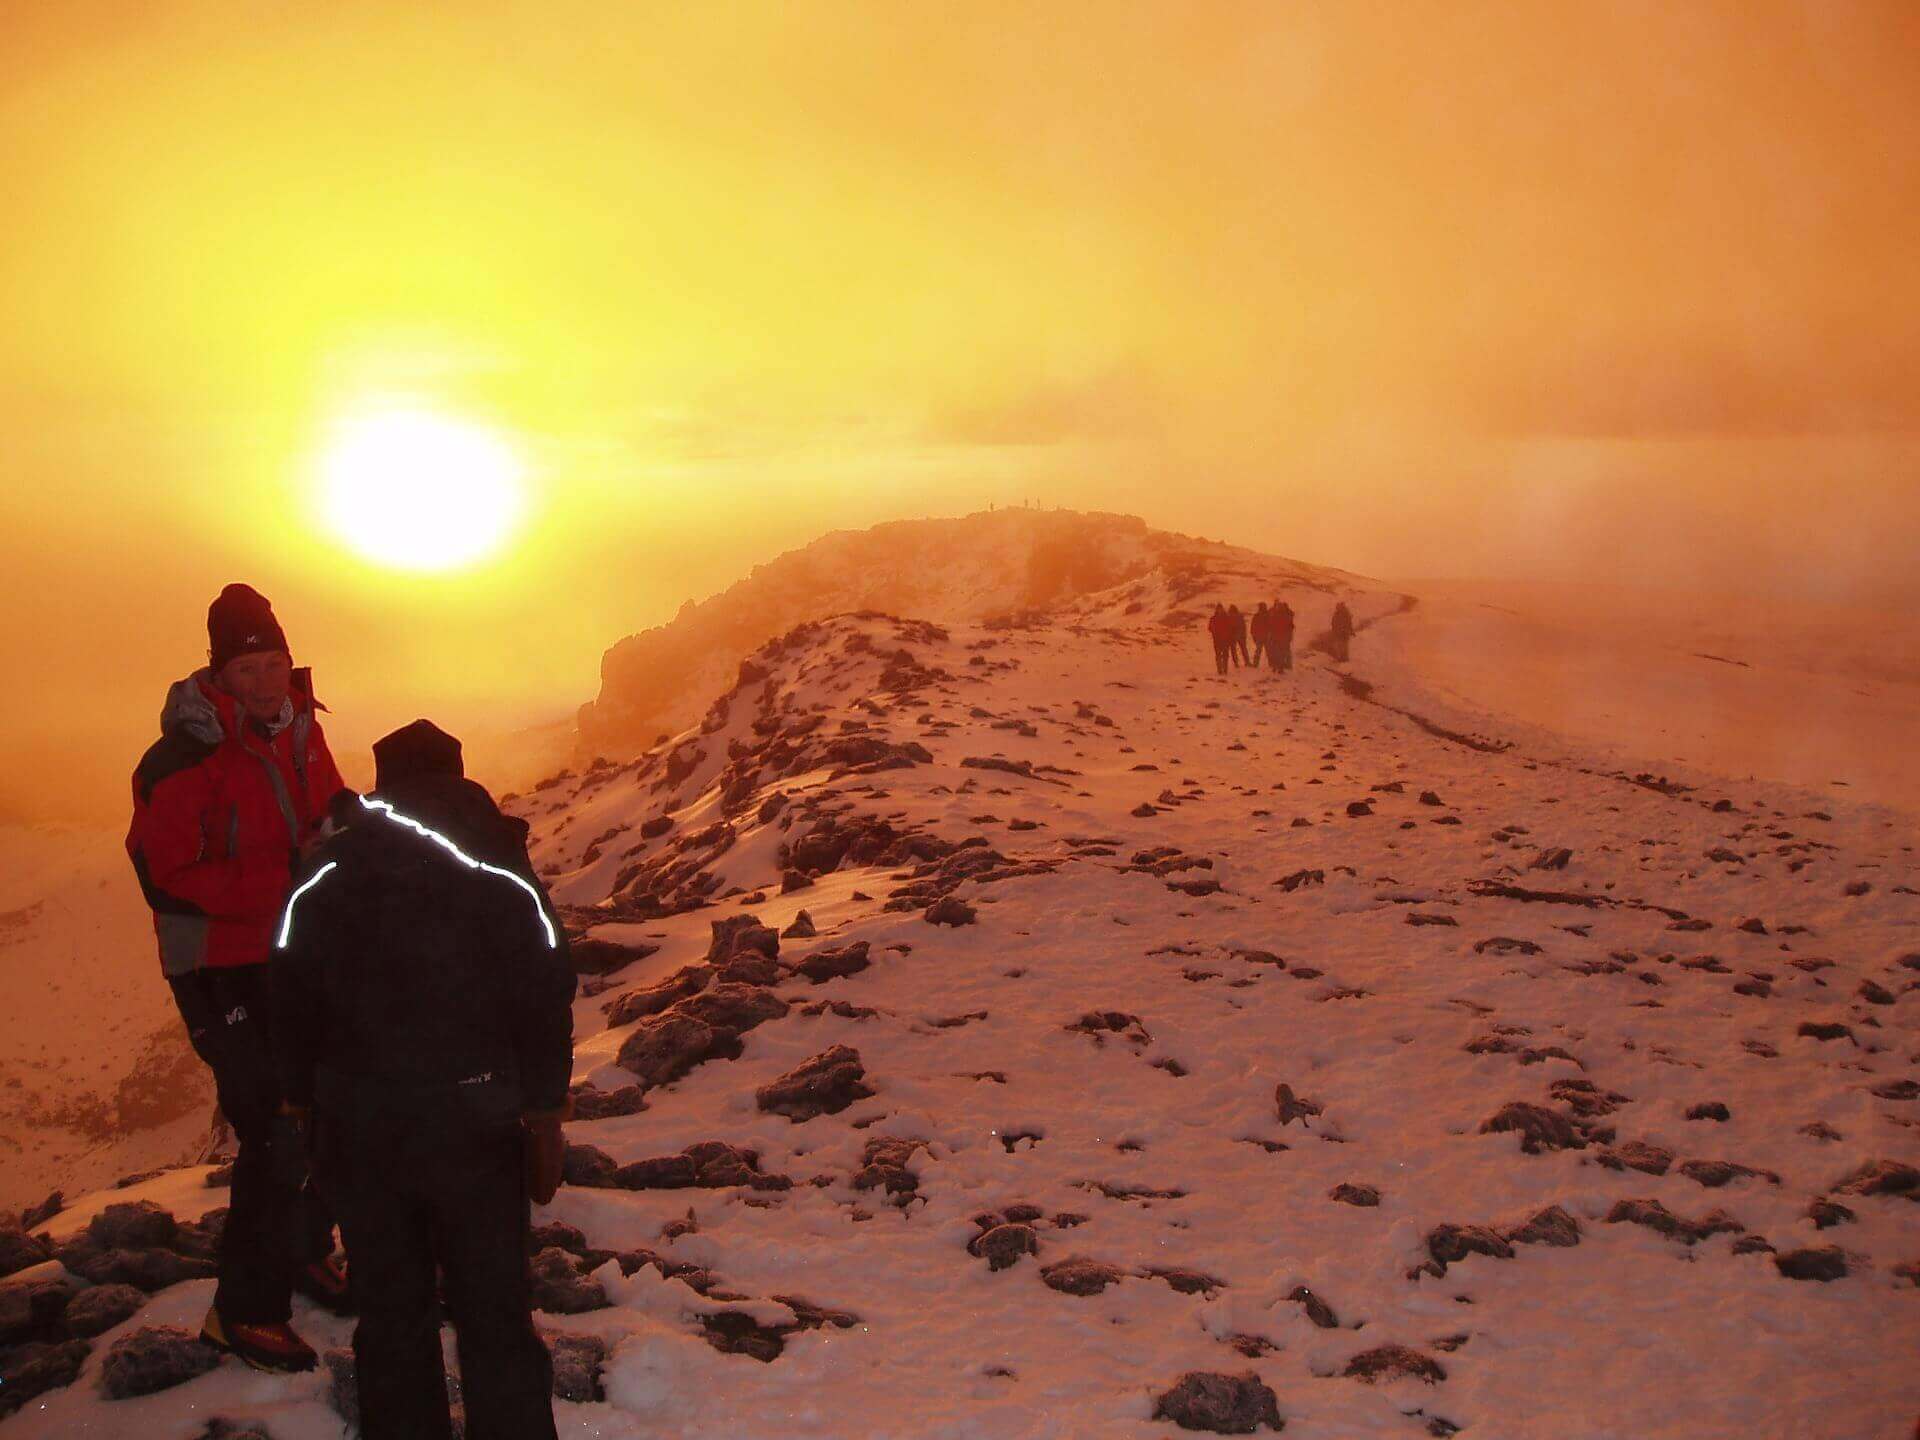 Mount Kilimanjaro trekking to sunrise summit